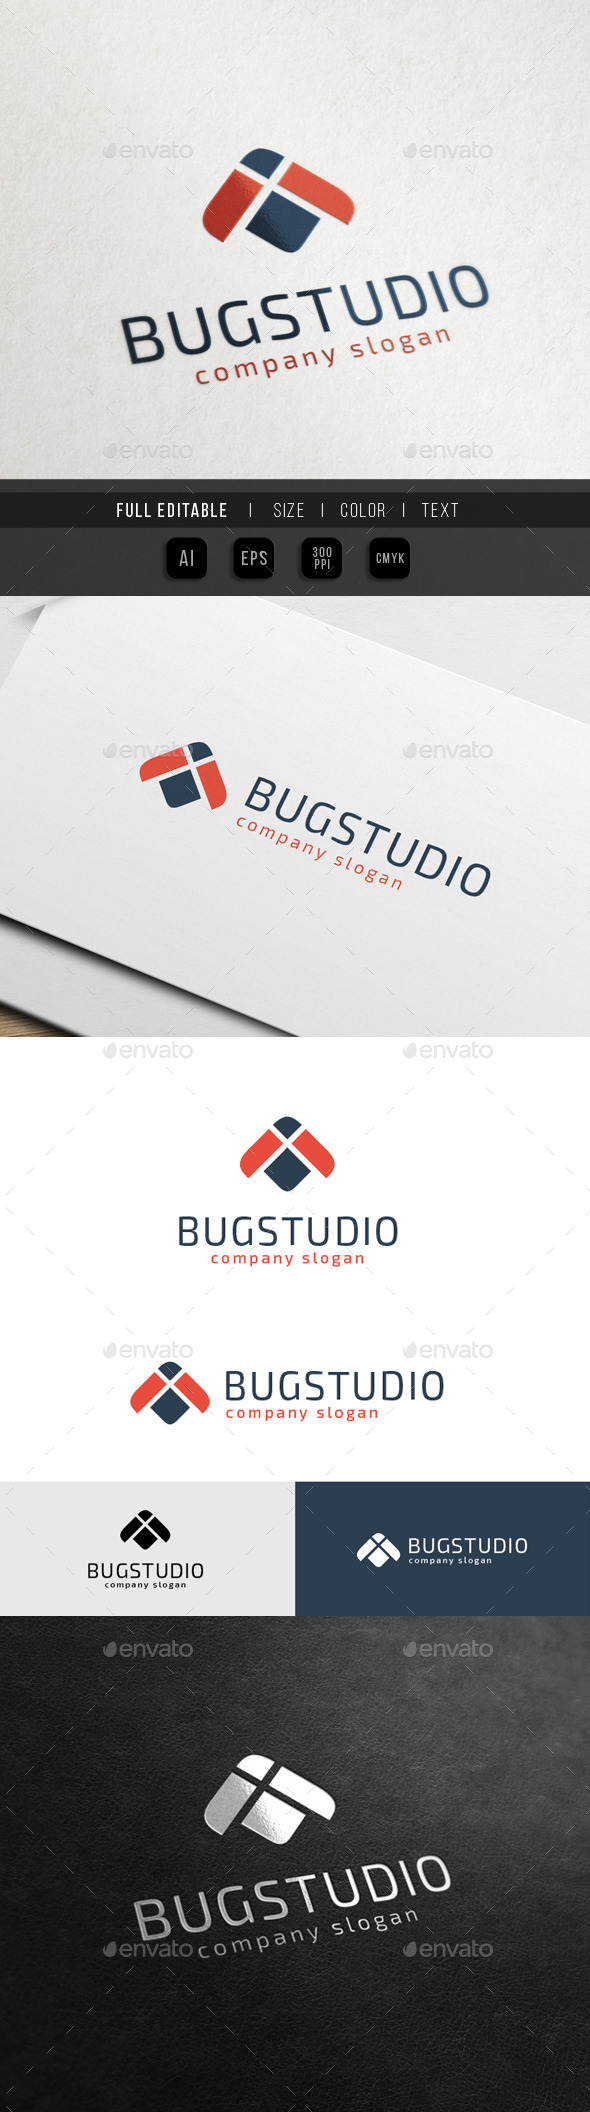 Bug Studio - Finance Marketing